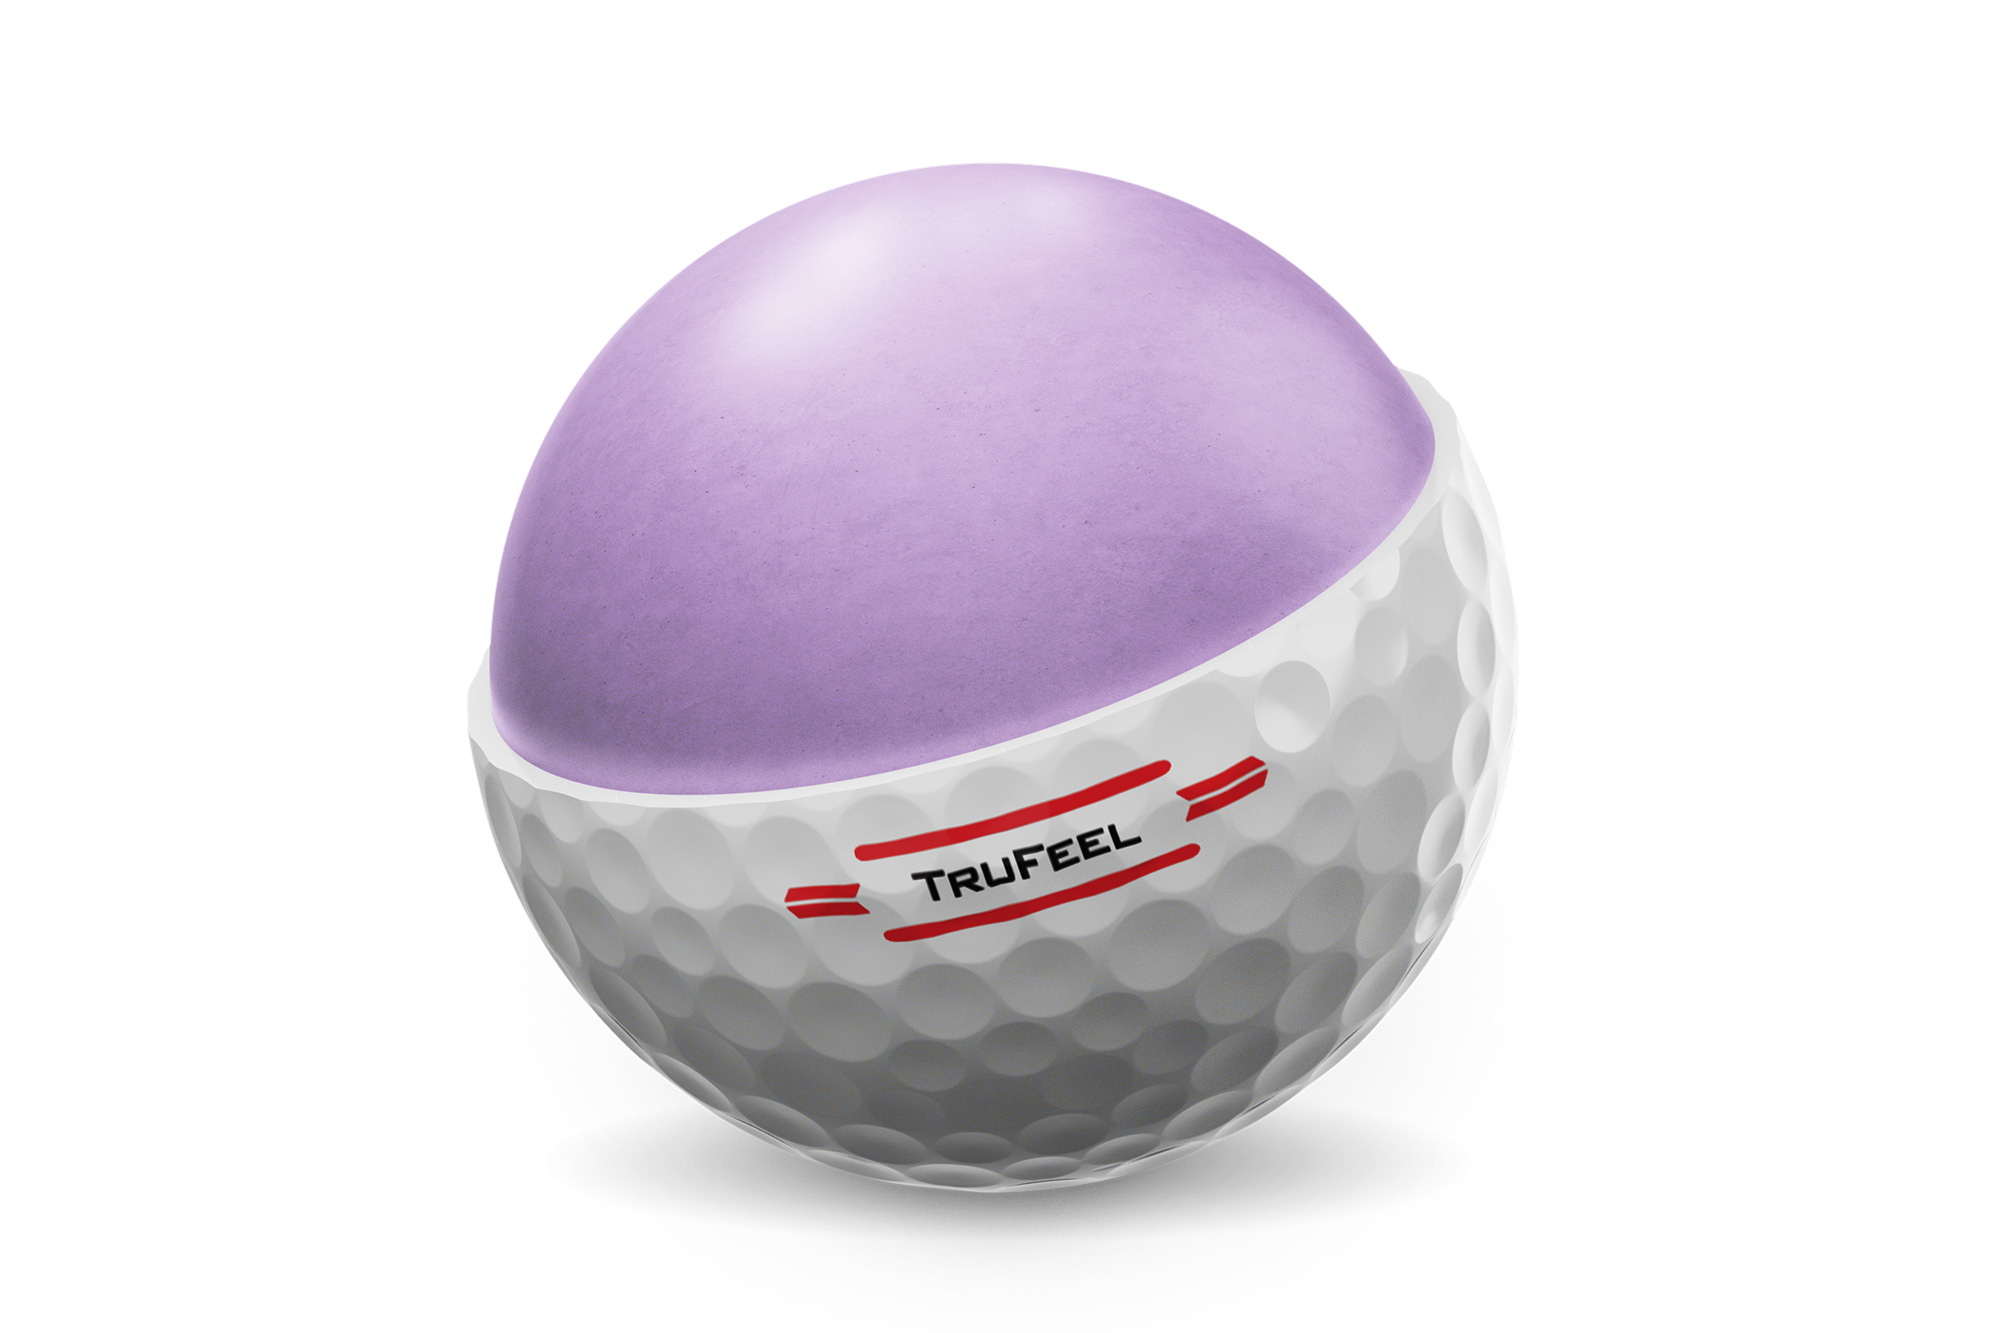 Titleist TruFeel golf ball review